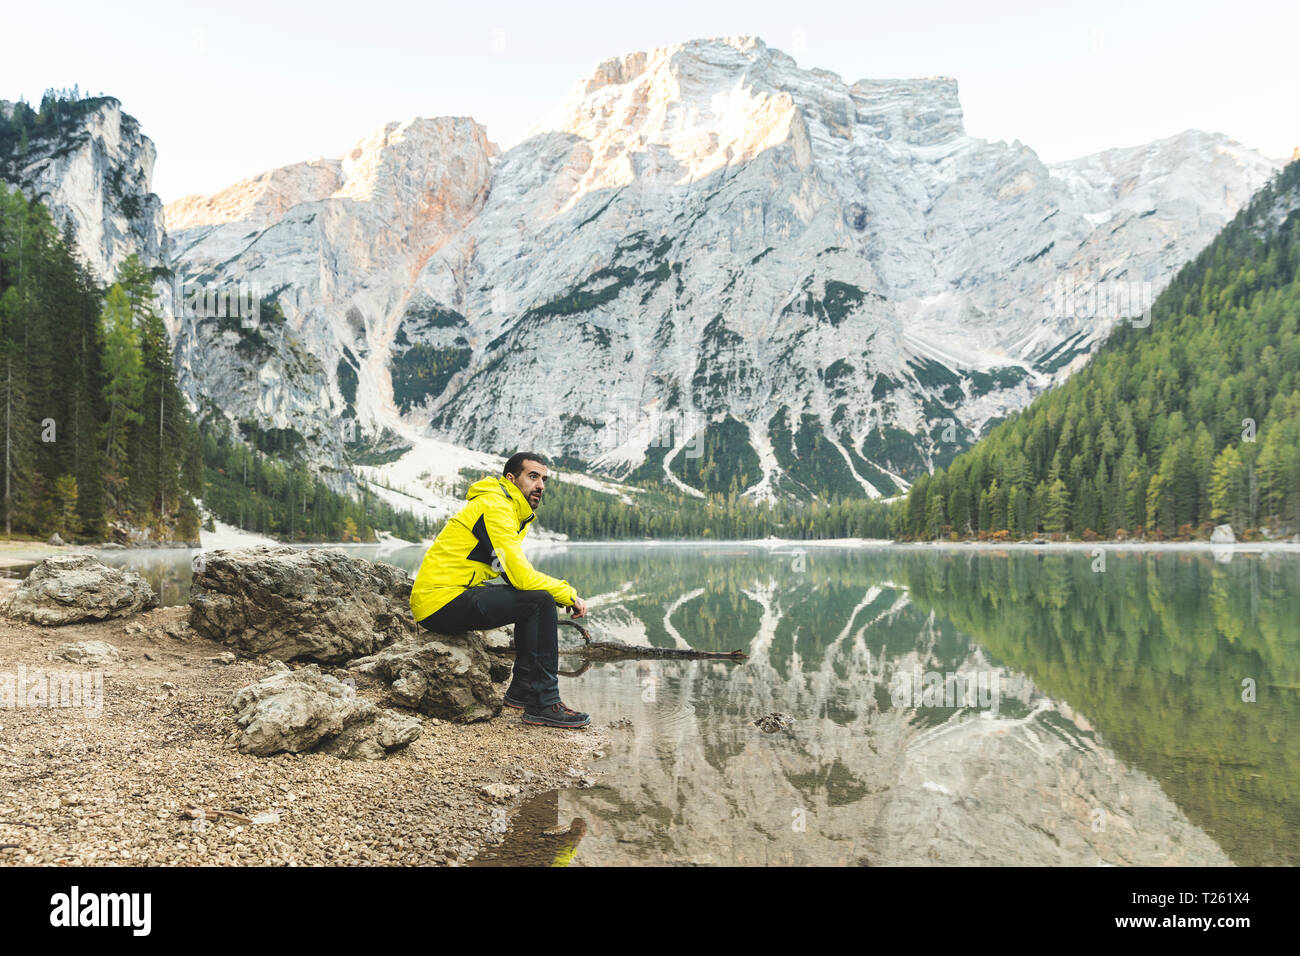 L'Italie, lac de Braies, homme assis sur un rocher au bord de lac avec des montagnes et forêt en arrière-plan Banque D'Images